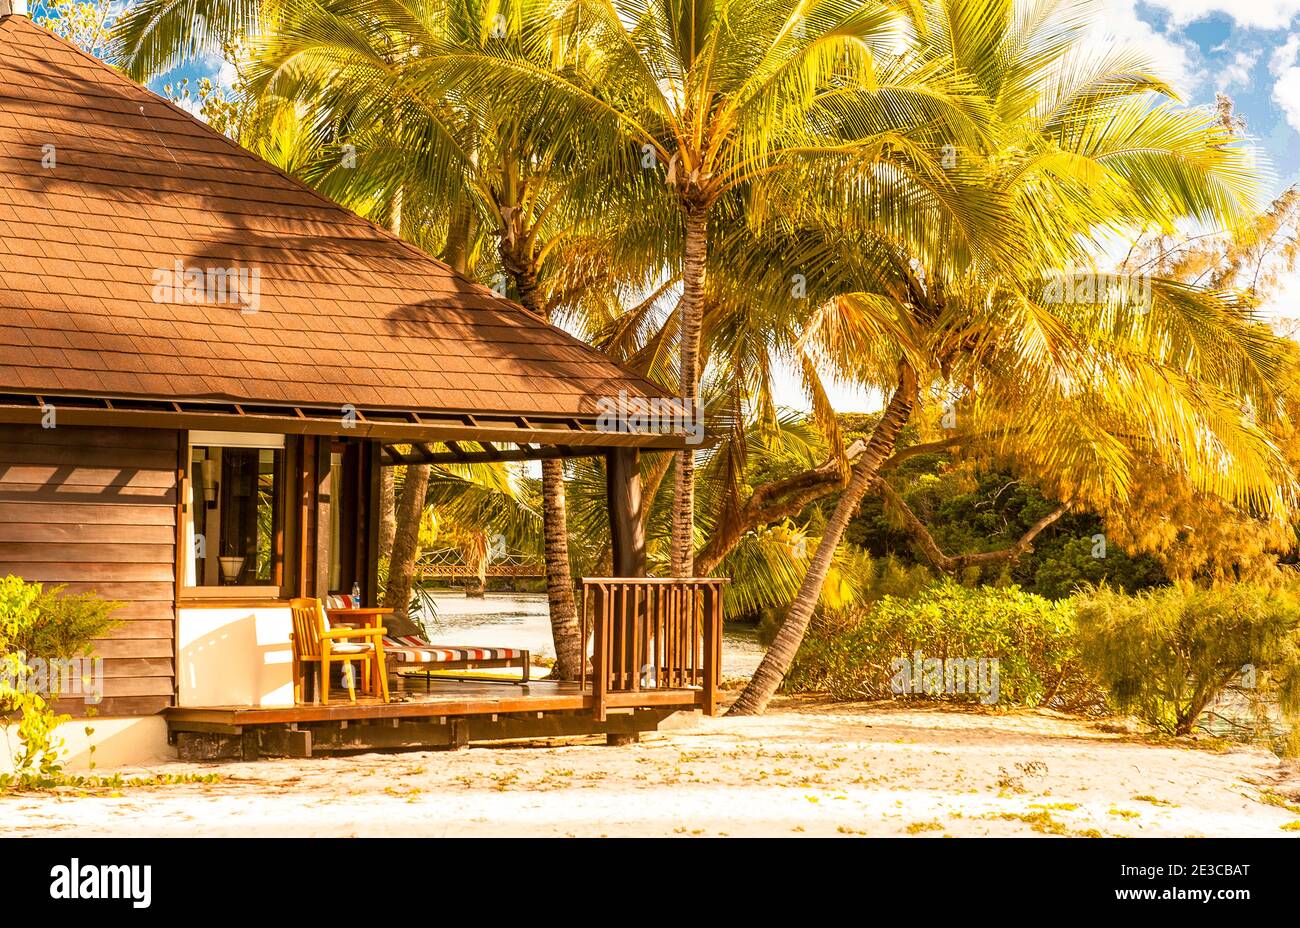 Los bungalows del lujoso hotel le Méridien bordean la playa de la Île des Pins, Nueva Caledonia, Oceanía Foto de stock